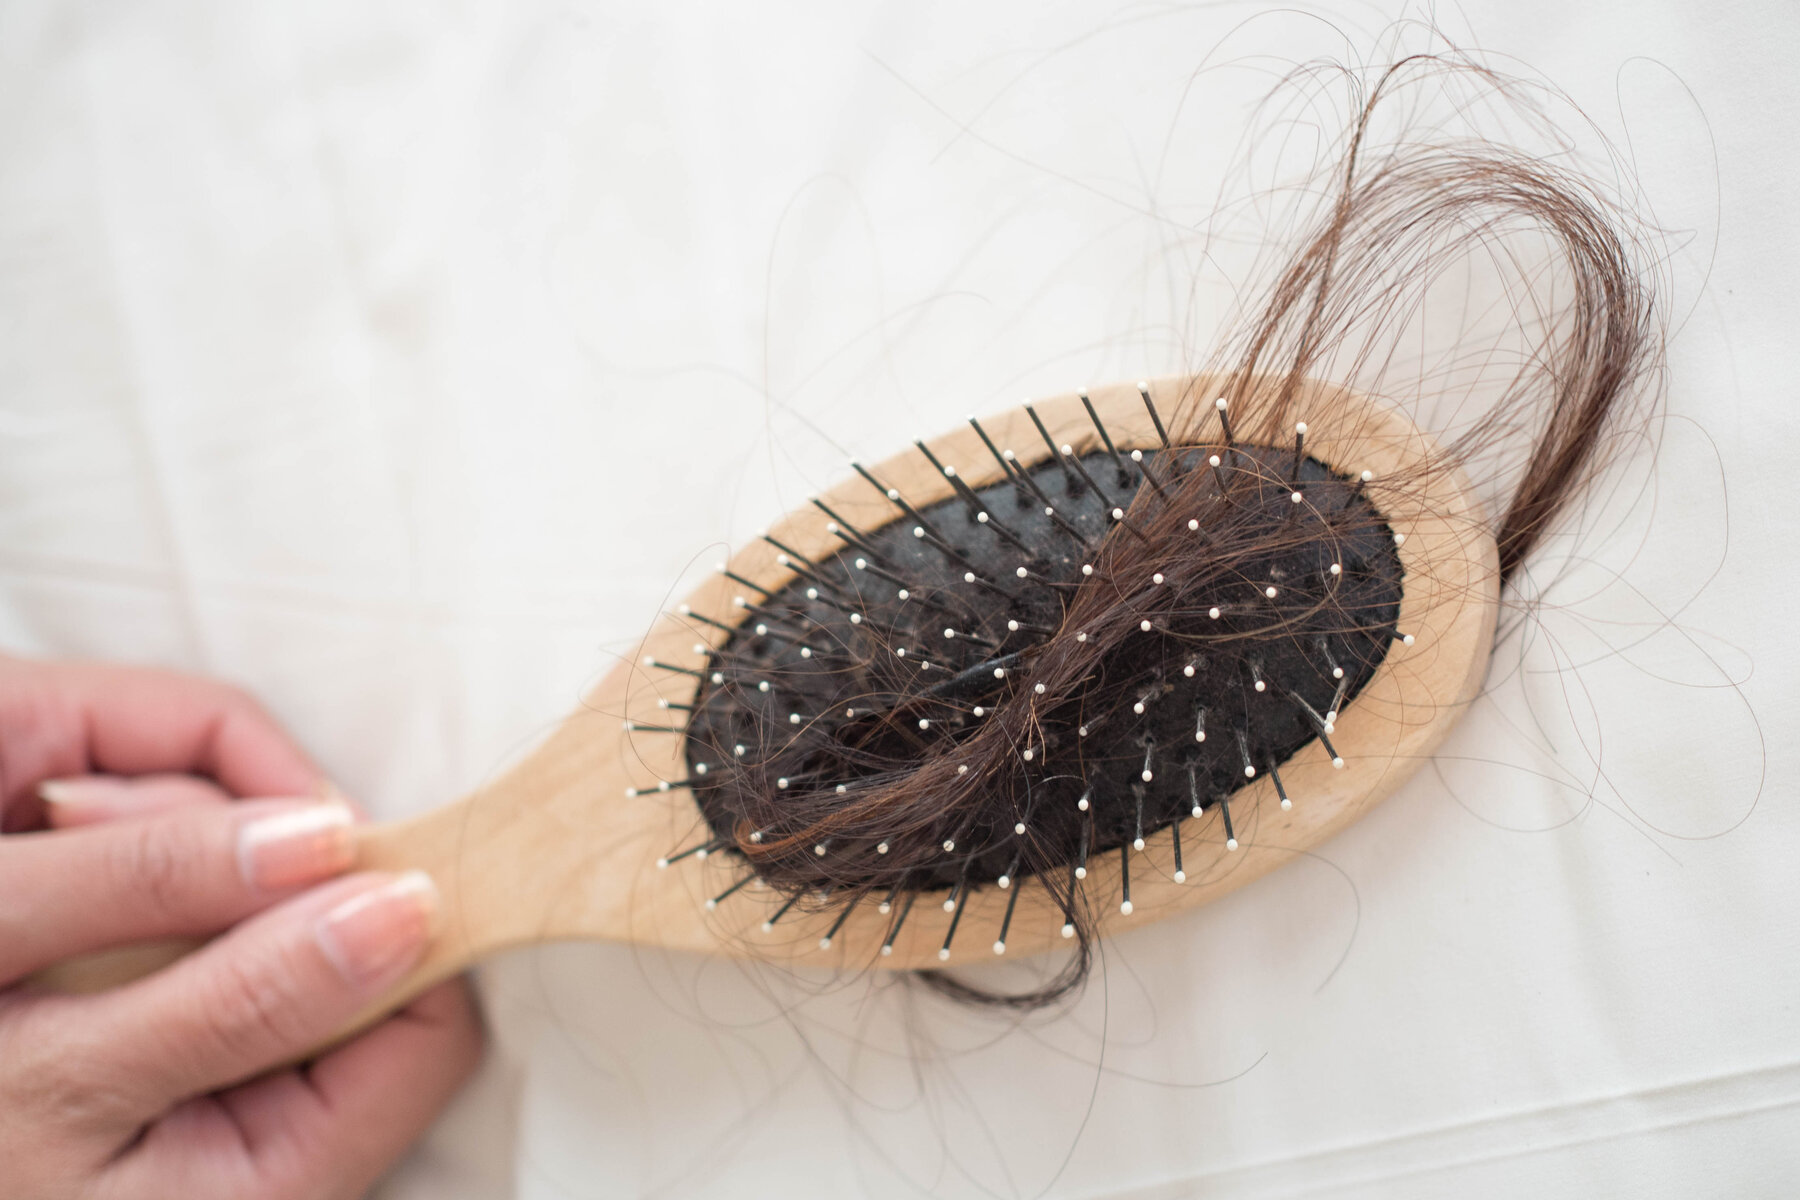 बाल झड़ने की समस्या डराने लगी है? जल्द शुरु करें ये काम, नहीं टूटेंगे बाल  Best natural and home remedies to prevent hair fall - News Nation